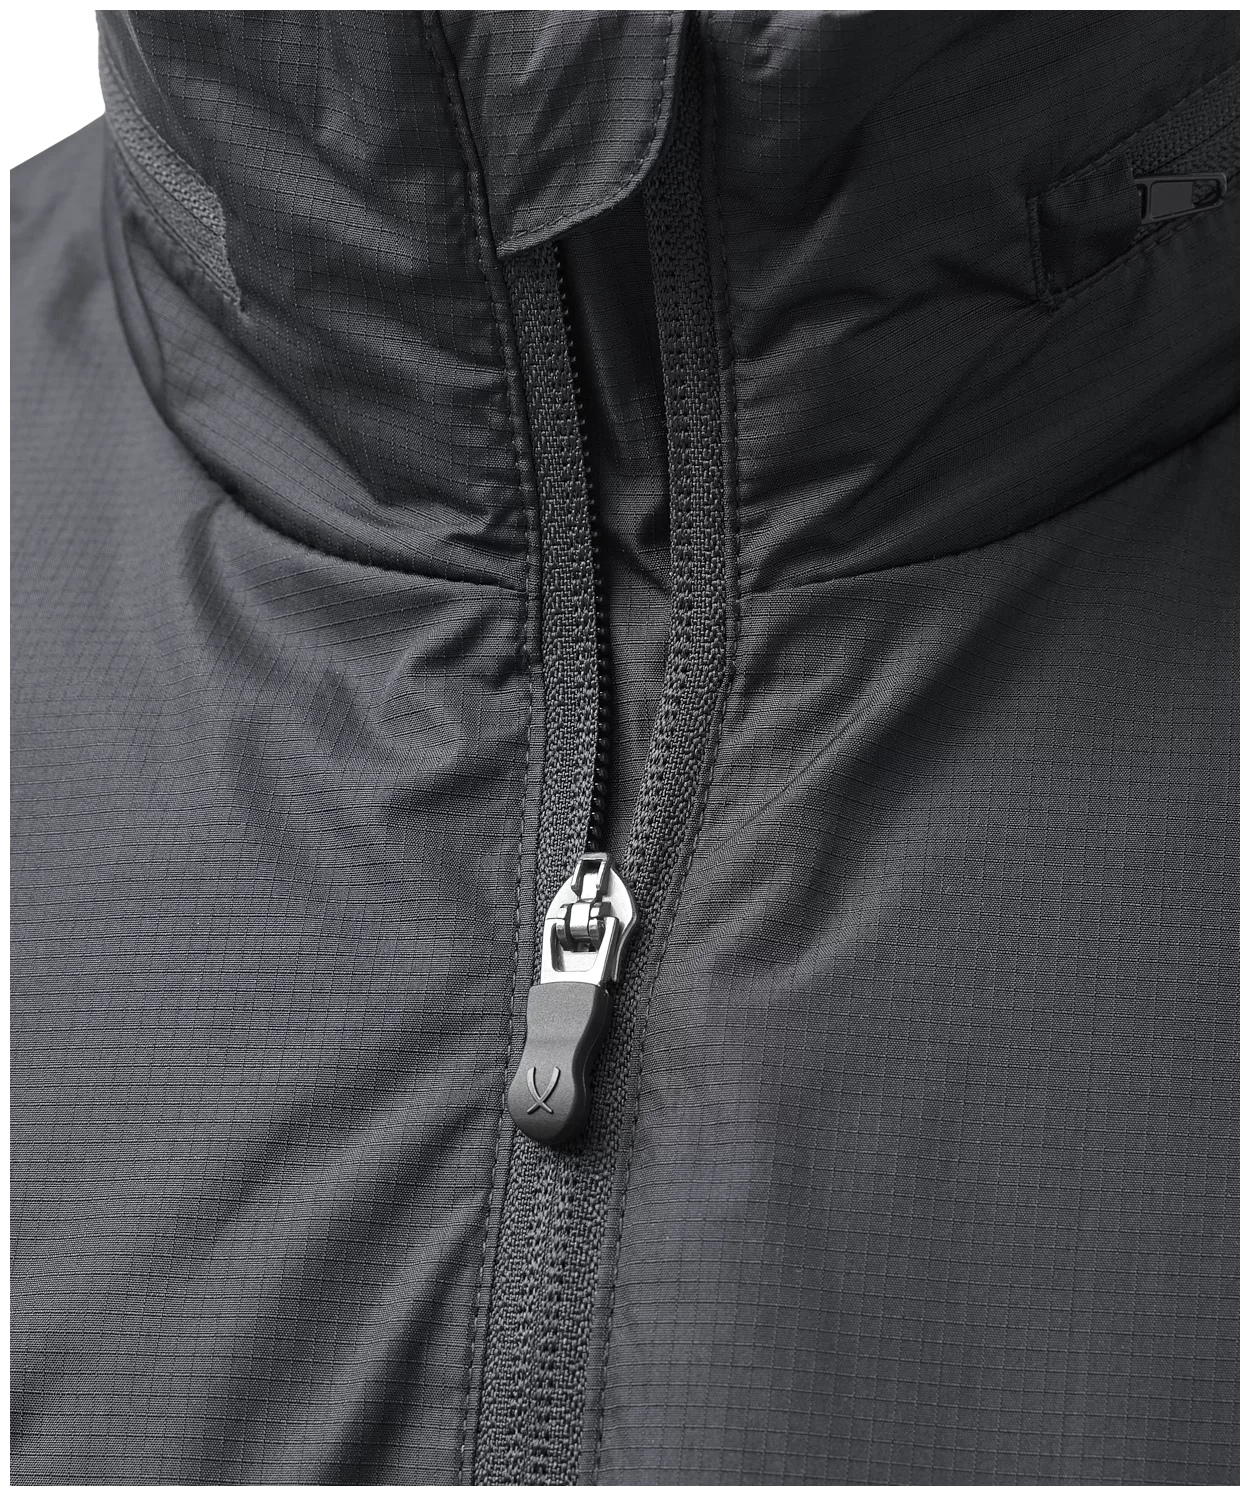 Реальное фото Куртка ветрозащитная Jogel Division PerFormPROOF Shower Jacket JD1WB0121.99, черный 20953 от магазина СпортЕВ